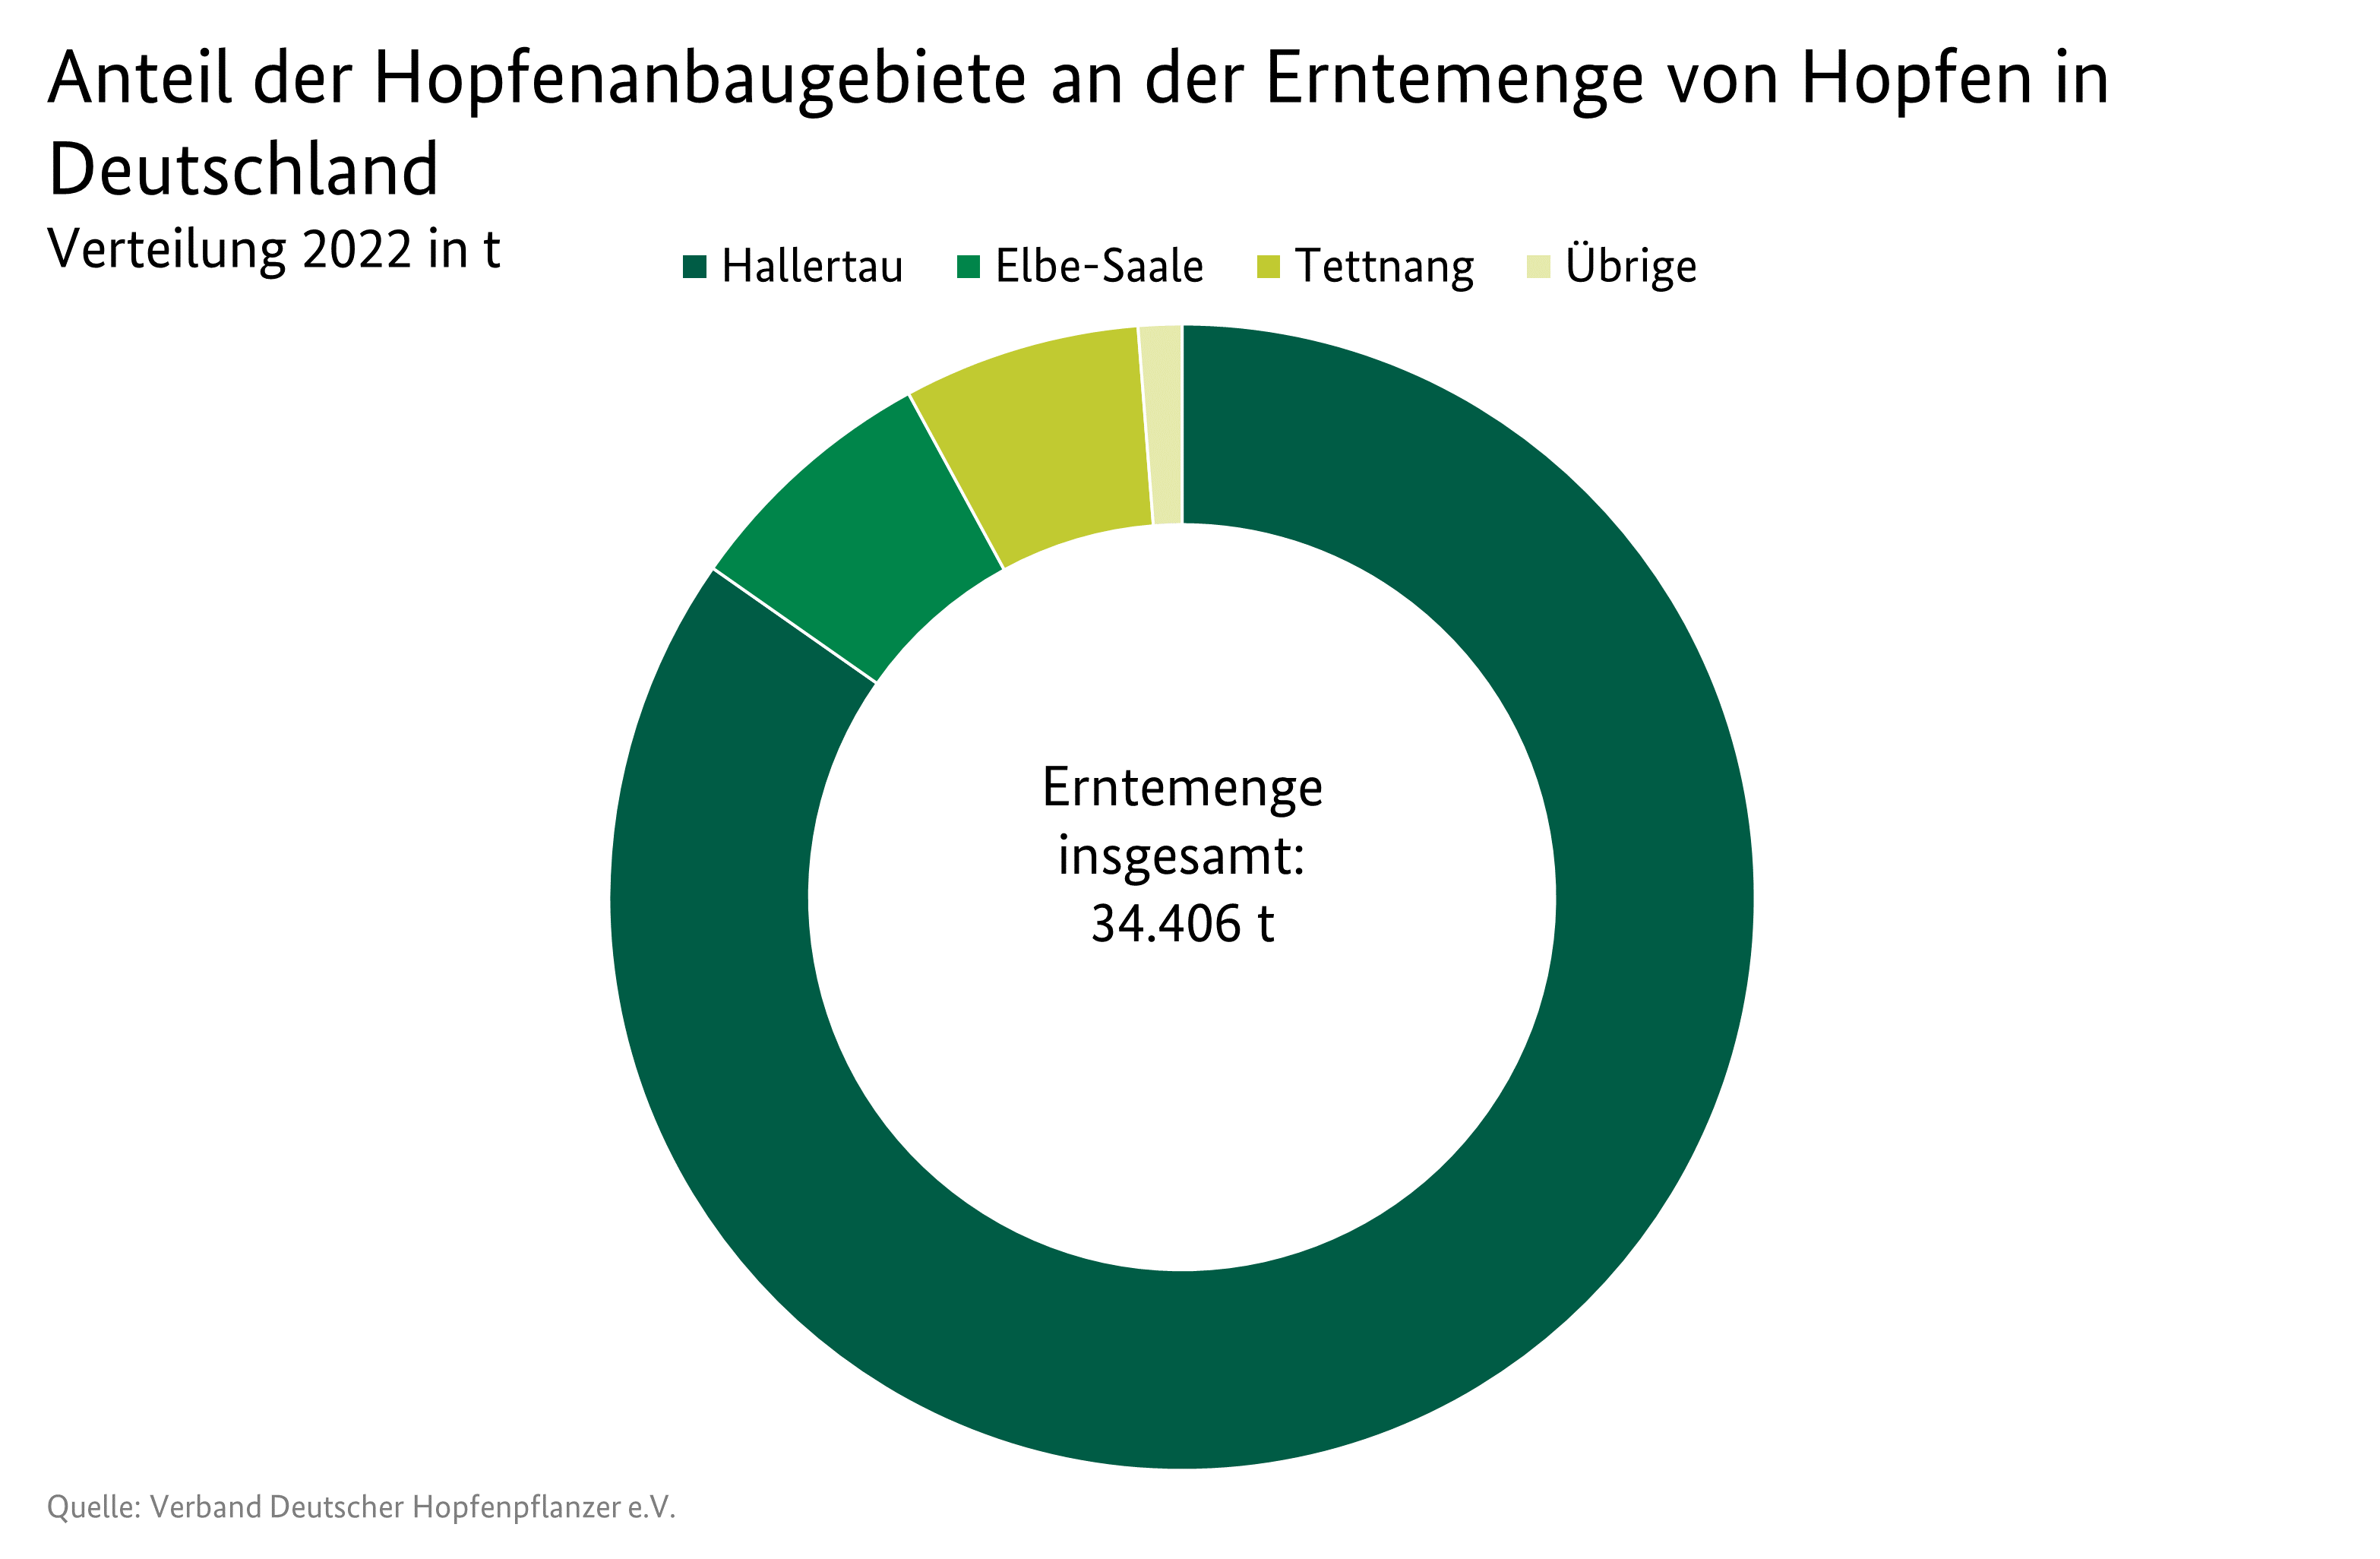 Ringdiagramm: Anteil der Hopfenanbaugebiete an der Erntemengen von Hopfen in Deutschland im Jahr 2022 in Tonnen. Angegeben für die Anbaugebiete Hallertau, Elbe-Saale, Tettnang und Übrige. Datenquelle ist die Tabelle MBT-0112330.